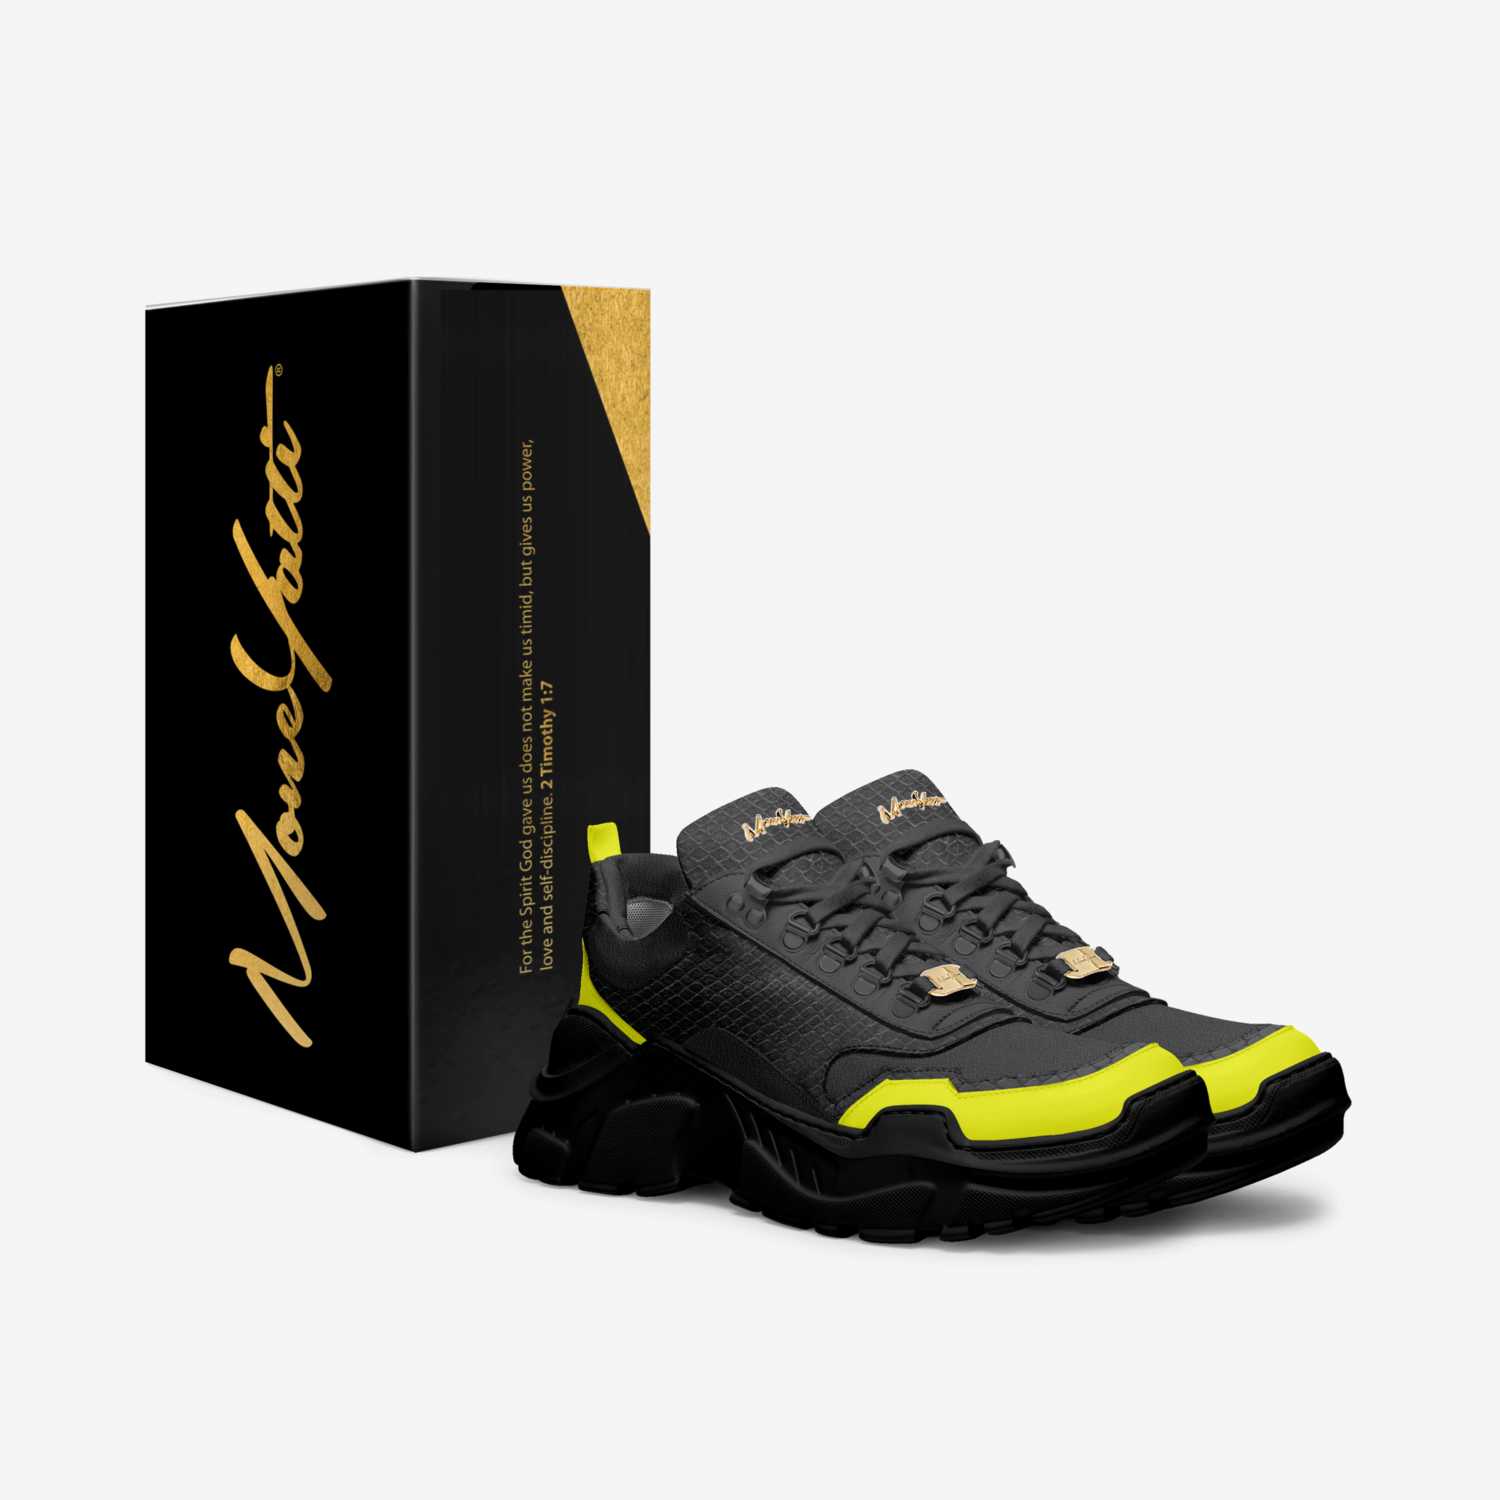 Moneyatti MurksP83 custom made in Italy shoes by Moneyatti Brand | Box view